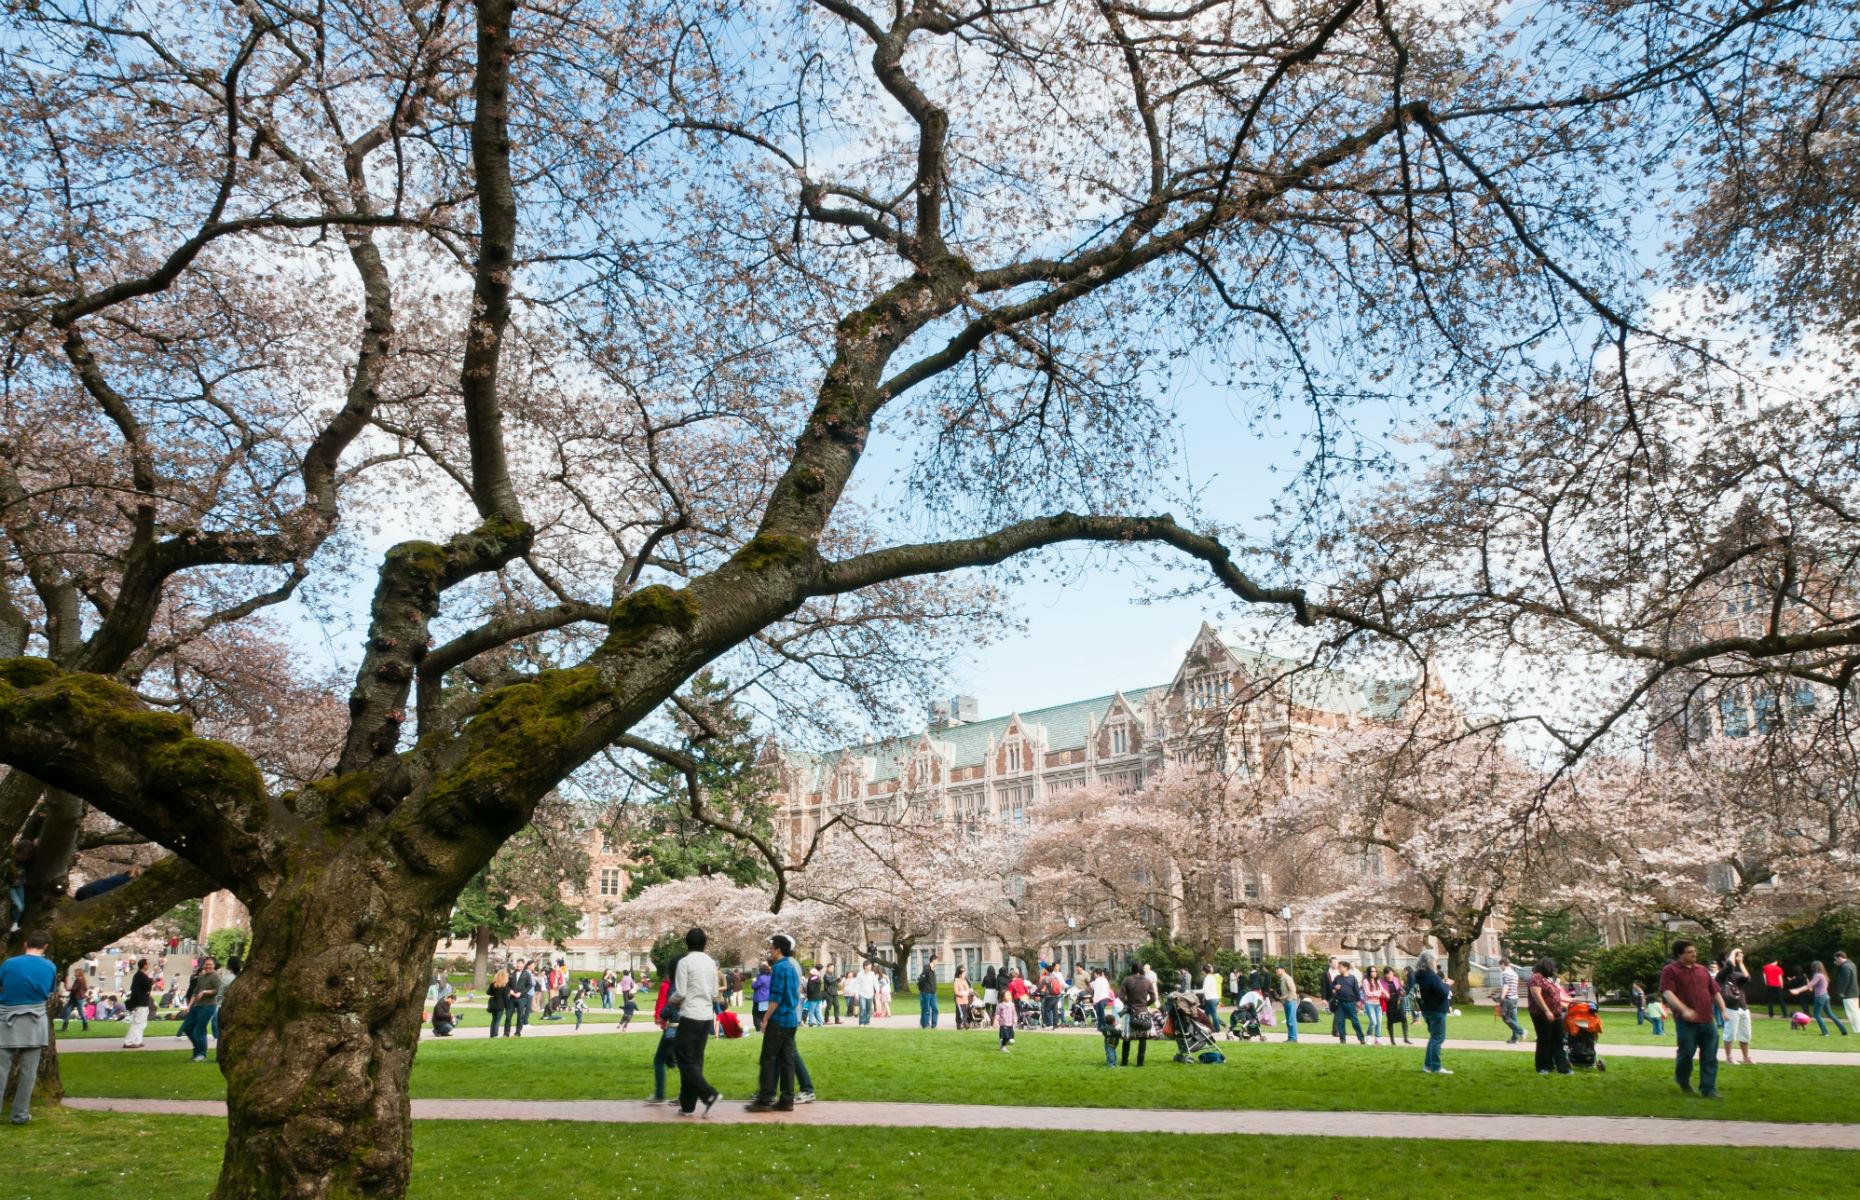 29th – University of Washington, US